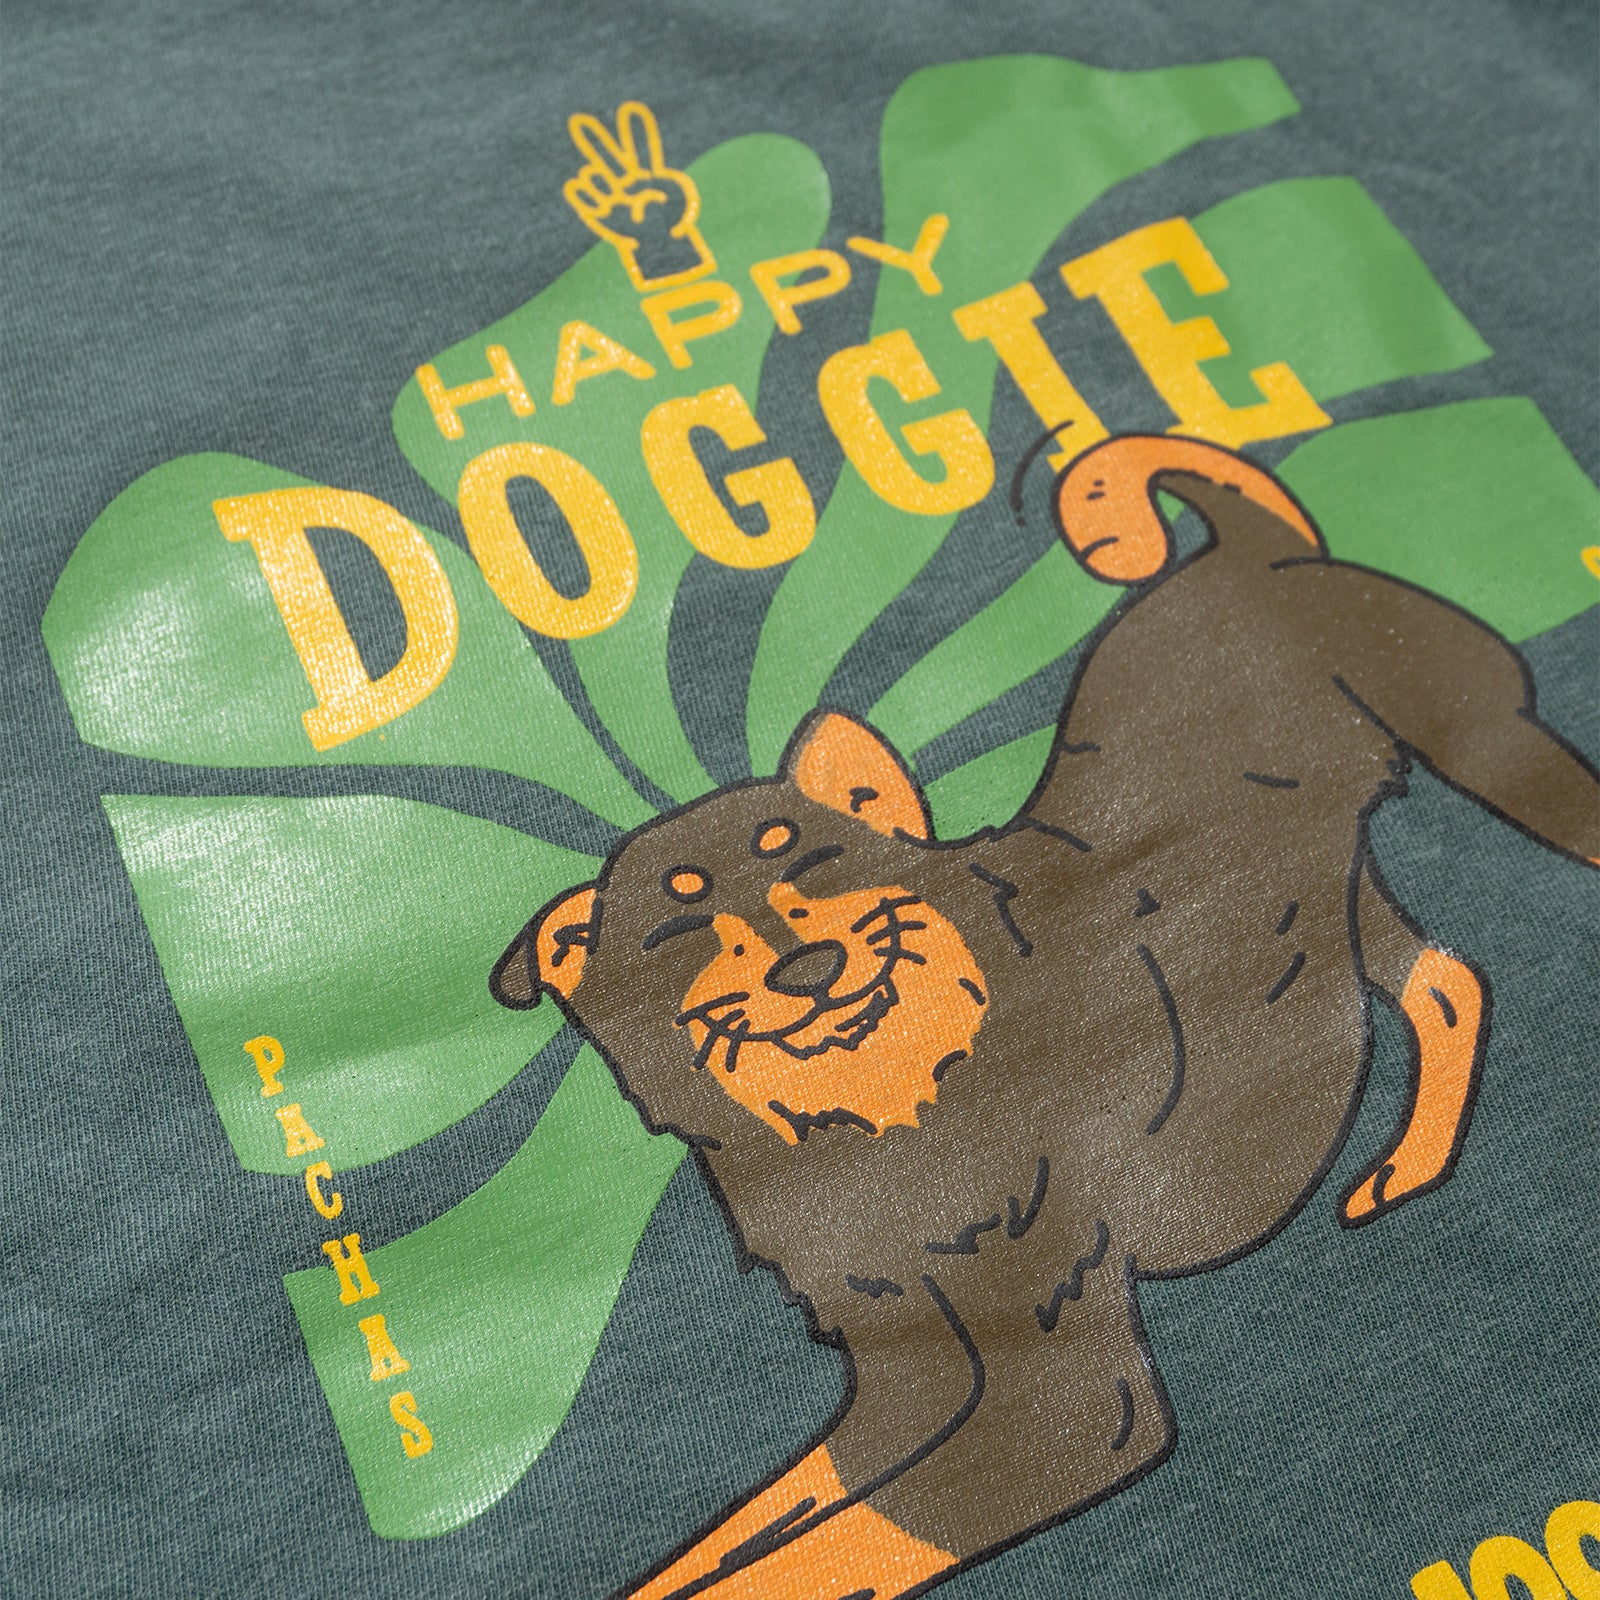 Camiseta "Happy Doggie"